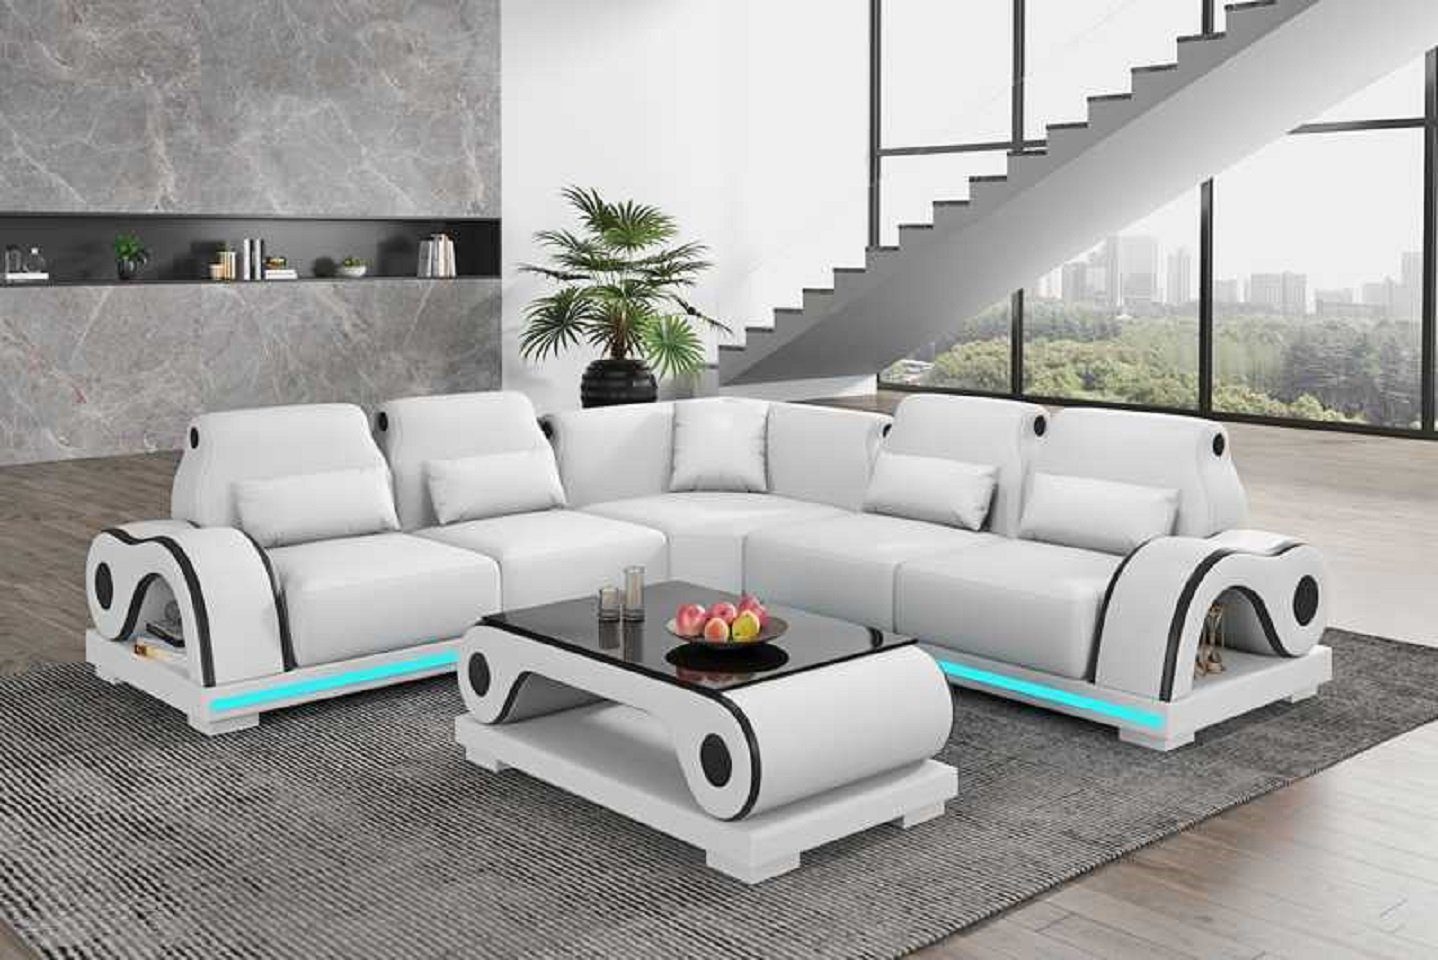 Weiß Eckgarnitur Luxus Ecksofa Moderne Form Couch JVmoebel Couchen, Sofa Made in Ecksofa 3 L Teile, Europe